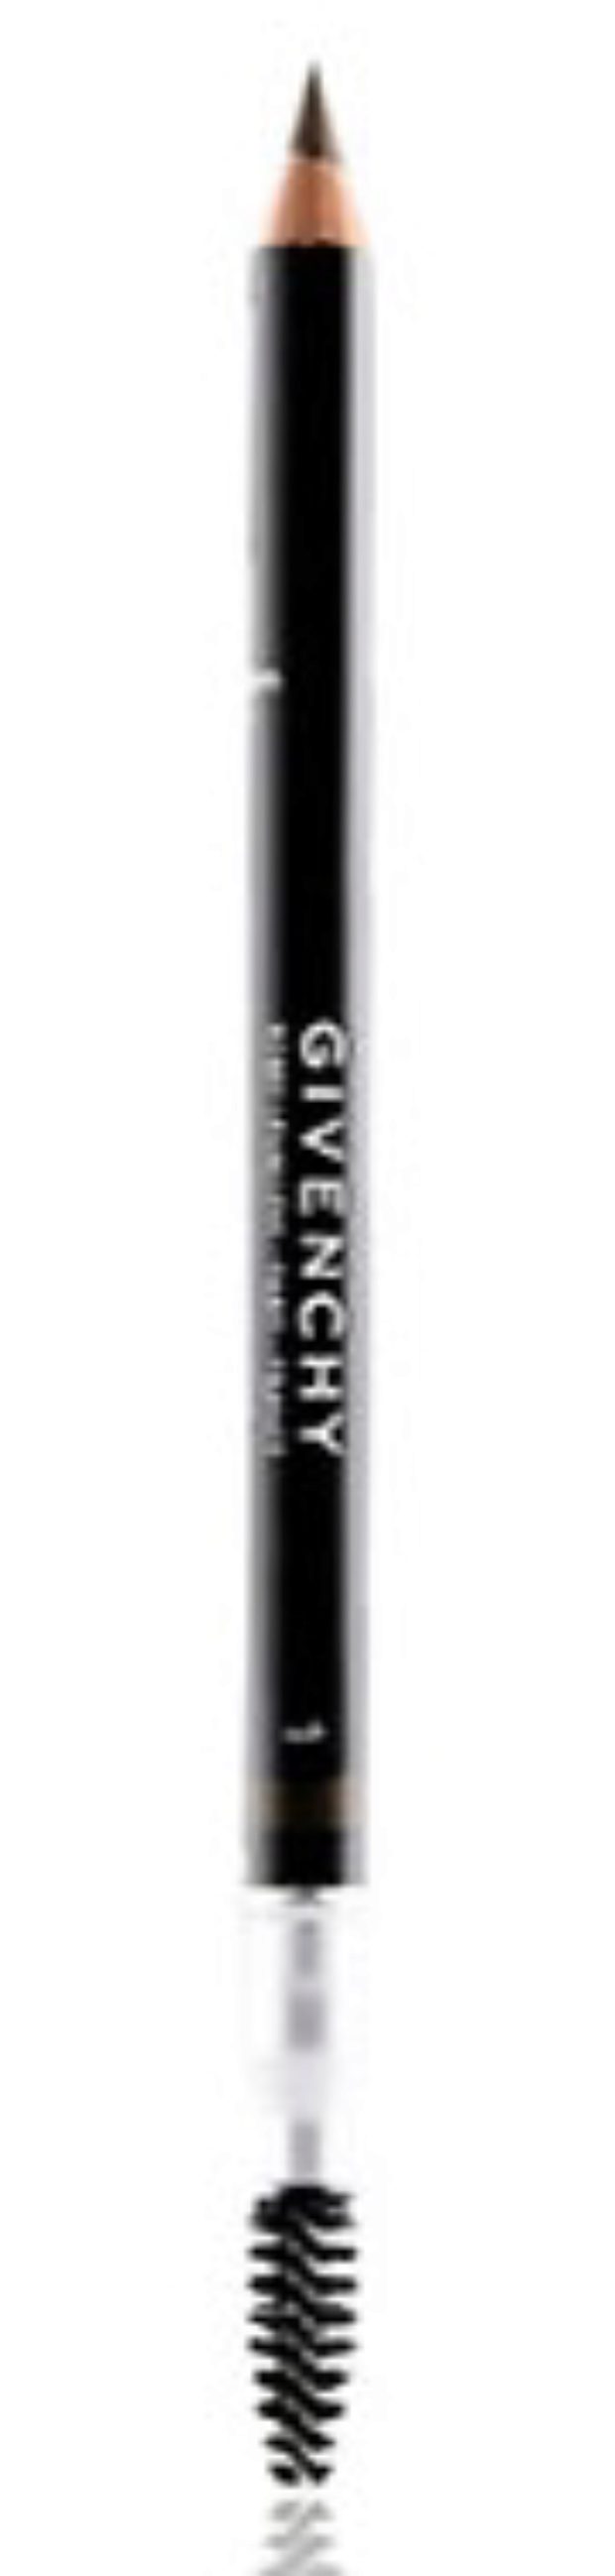 Карандаш для бровей Givenchy 01: отзывы, особенности, рекомендации к использованию